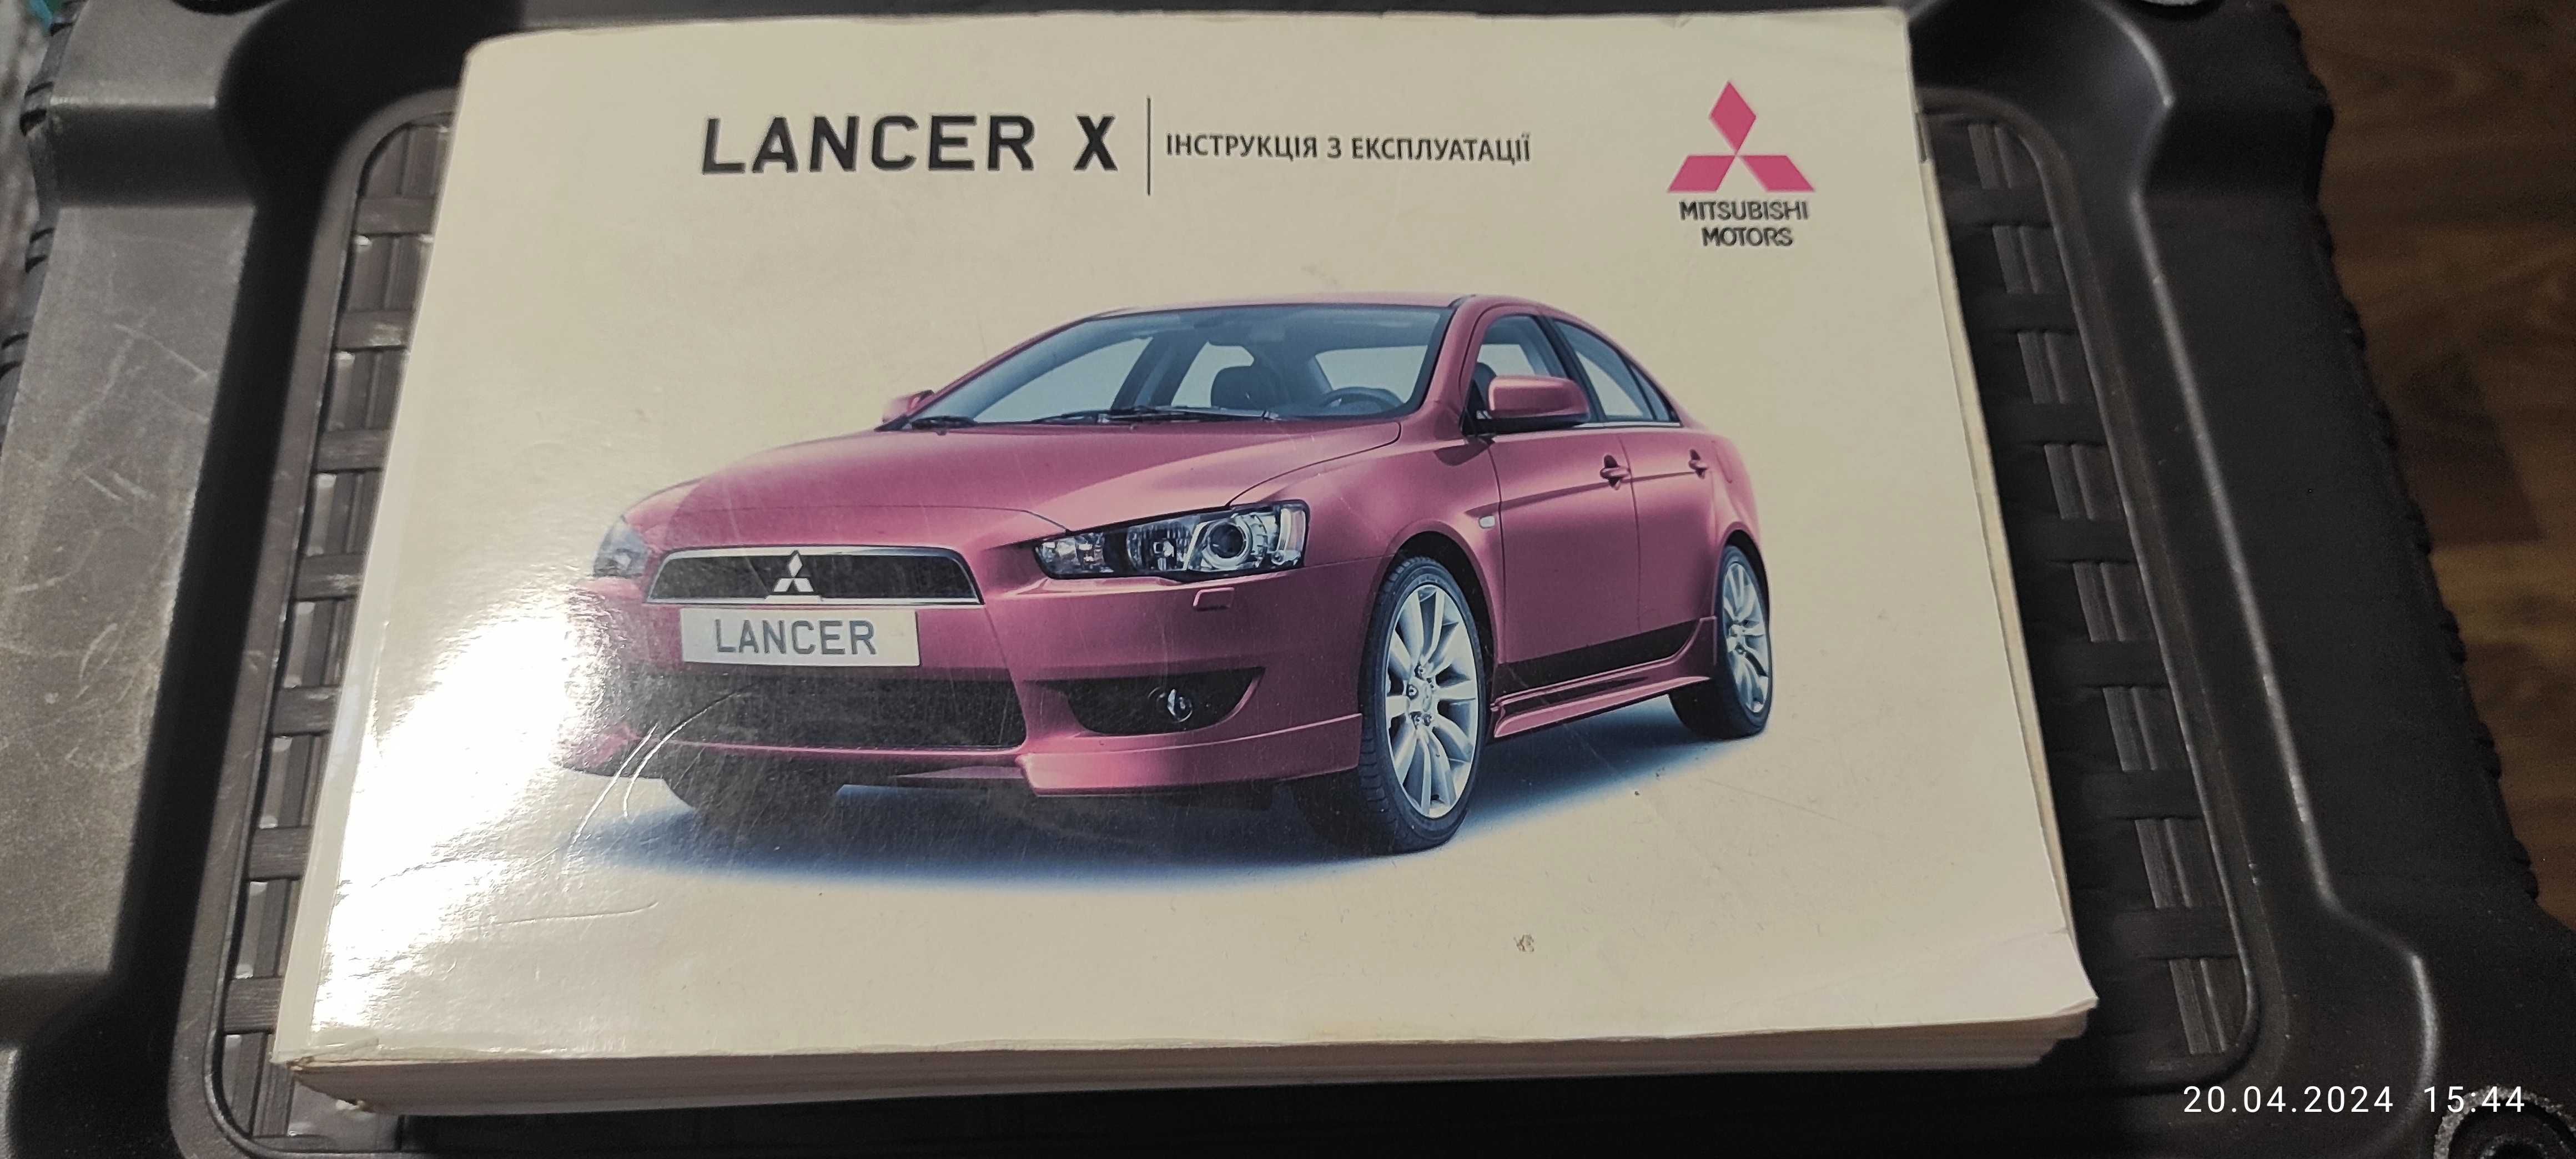 Руководство по ремонту Mitsubishi Lancer X / Книга Мицубиси Лансер 10